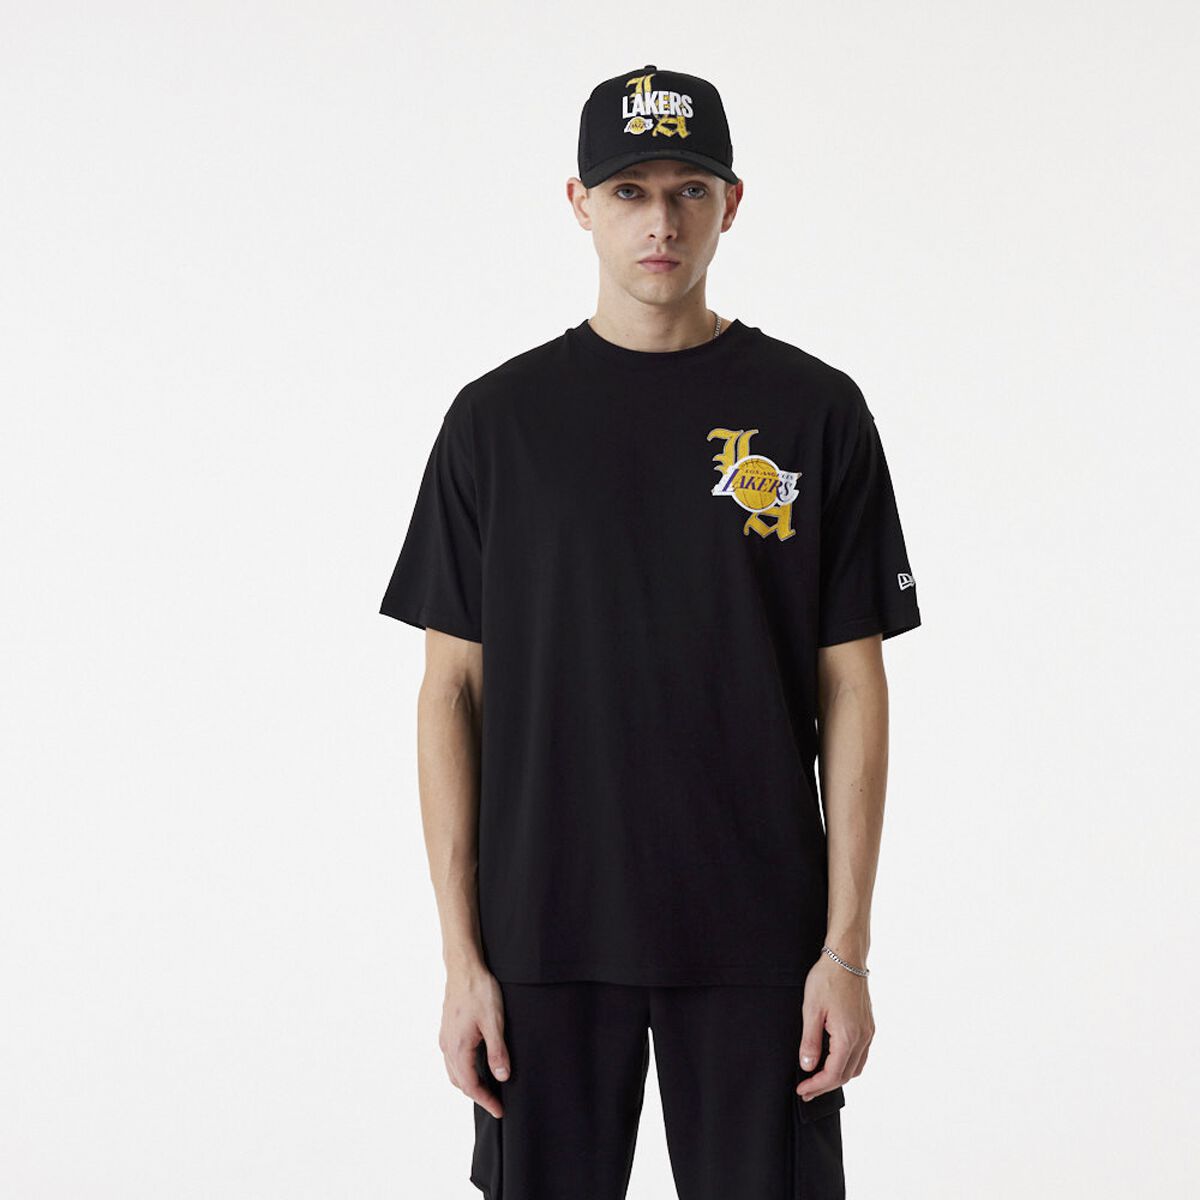 New Era - NBA T-Shirt - Los Angeles Lakers - S bis M - für Männer - Größe M - schwarz